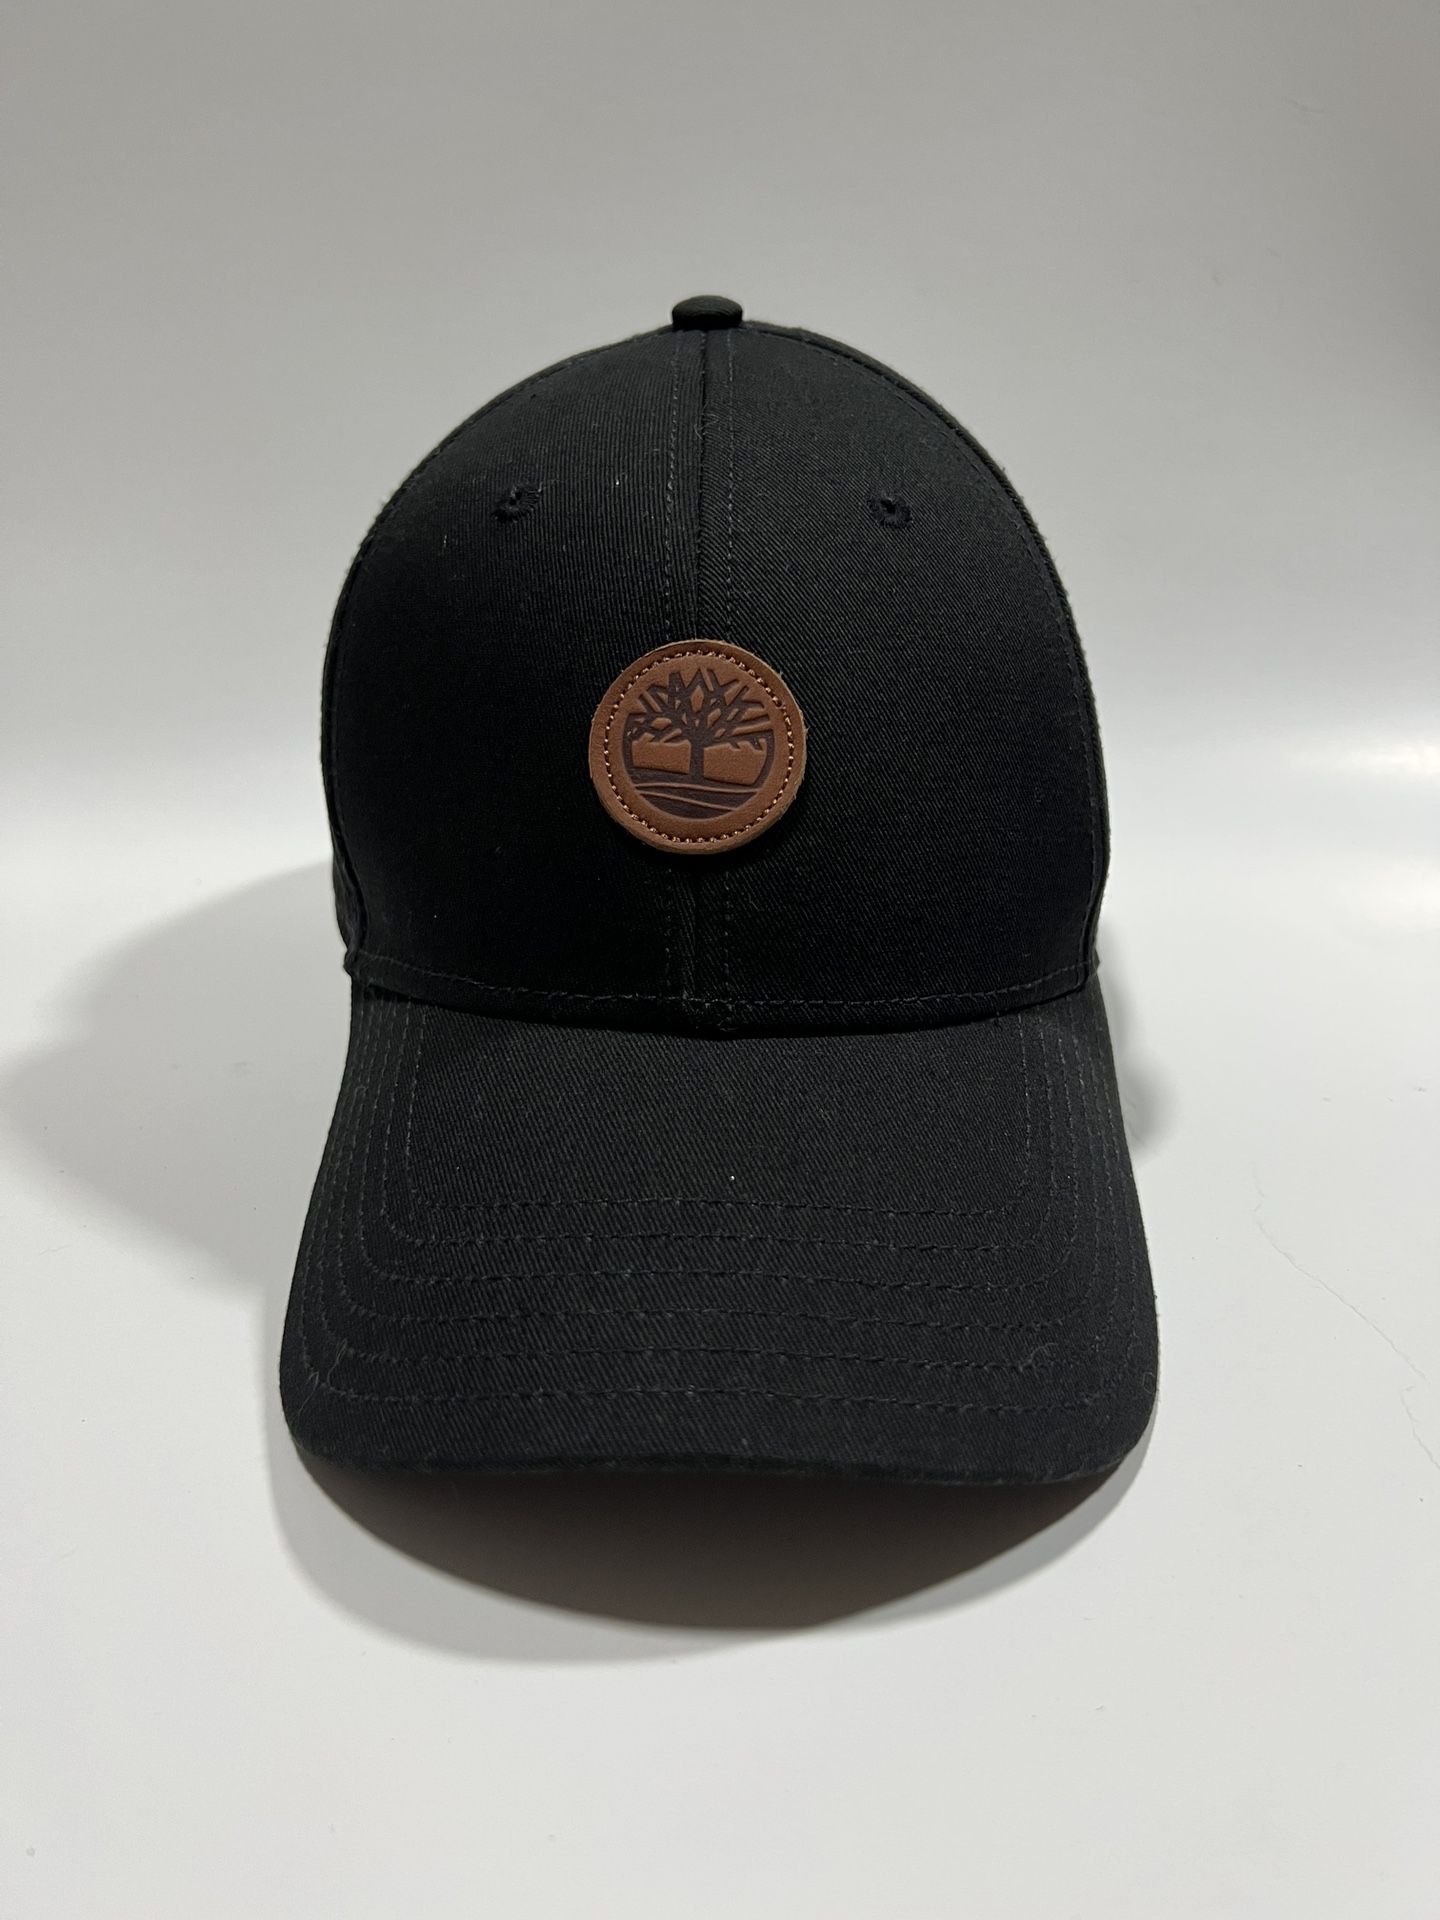 Timberland Black Strap-Back Adjustable Hat Cap  